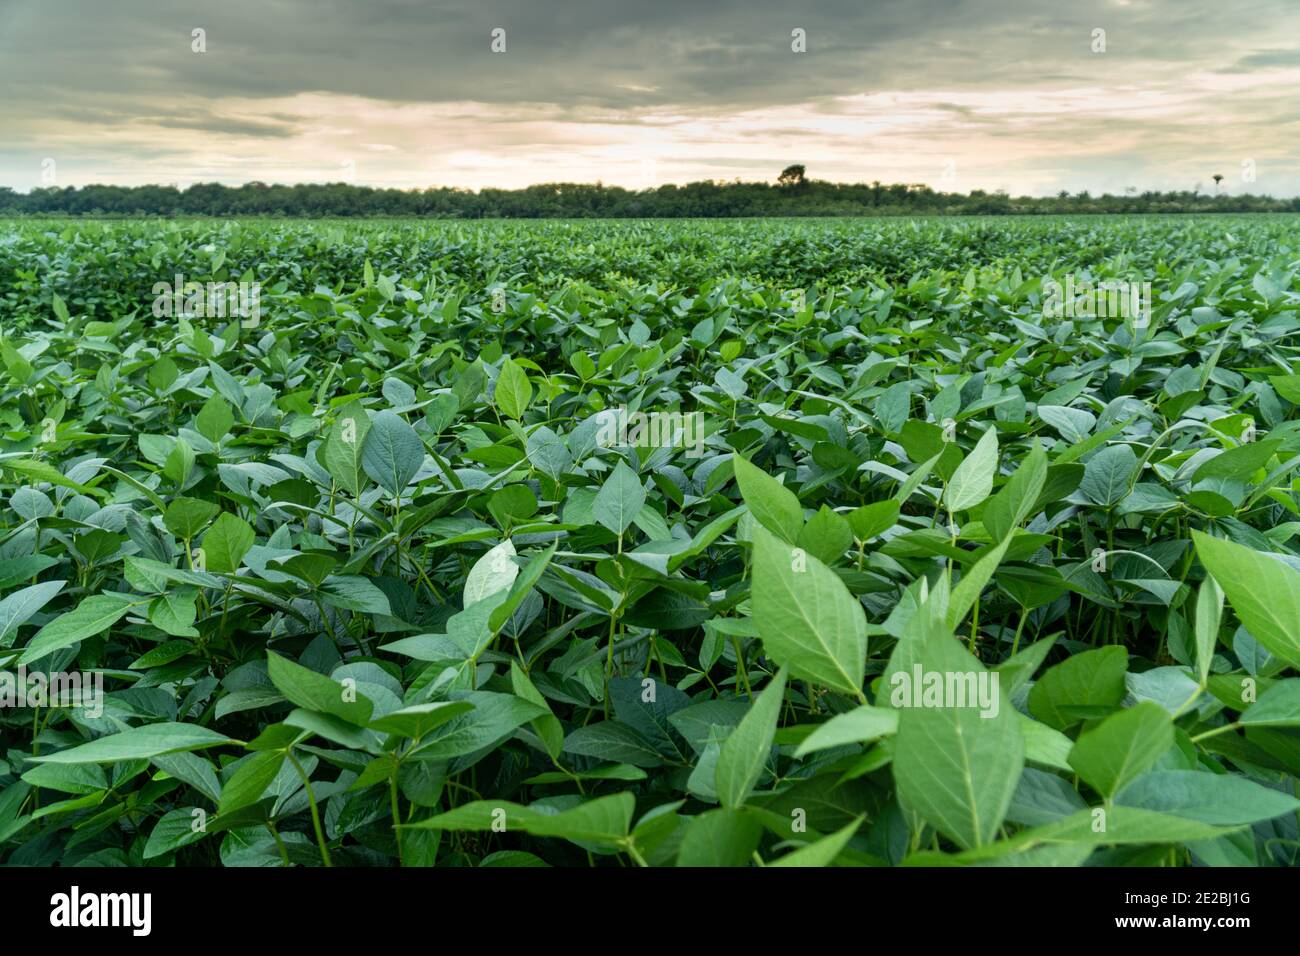 Primo piano di foglie di soia e piante in una piantagione di soia nella foresta amazzonica. Concetto di ecologia, monocultura, conservazione, deforestazione. Foto Stock